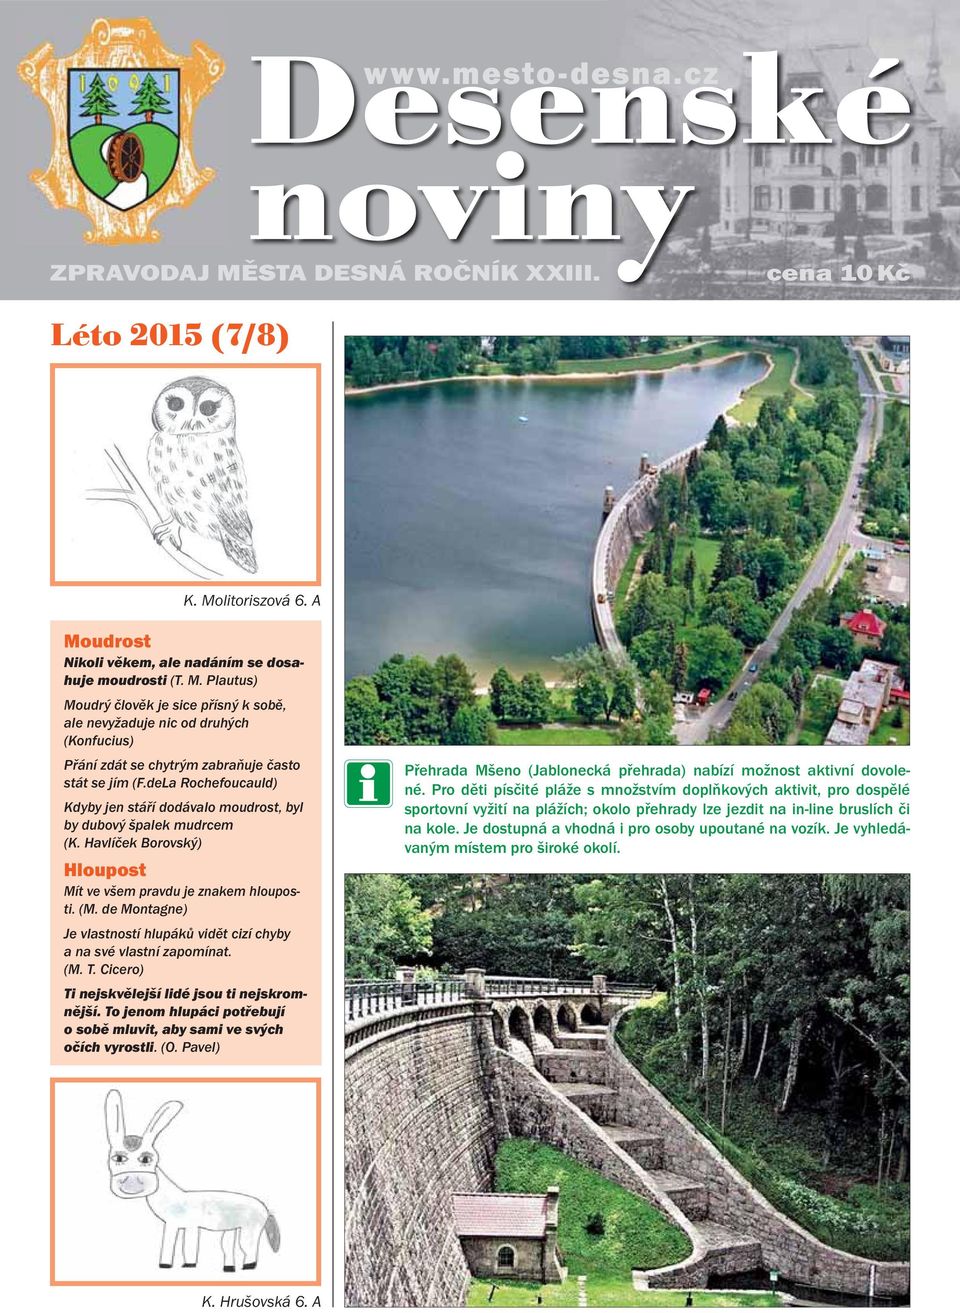 Léto 2015 (7/8) ZPRAVODAJ MĚSTA DESNÁ ROČNÍK XXIII. - PDF Stažení zdarma